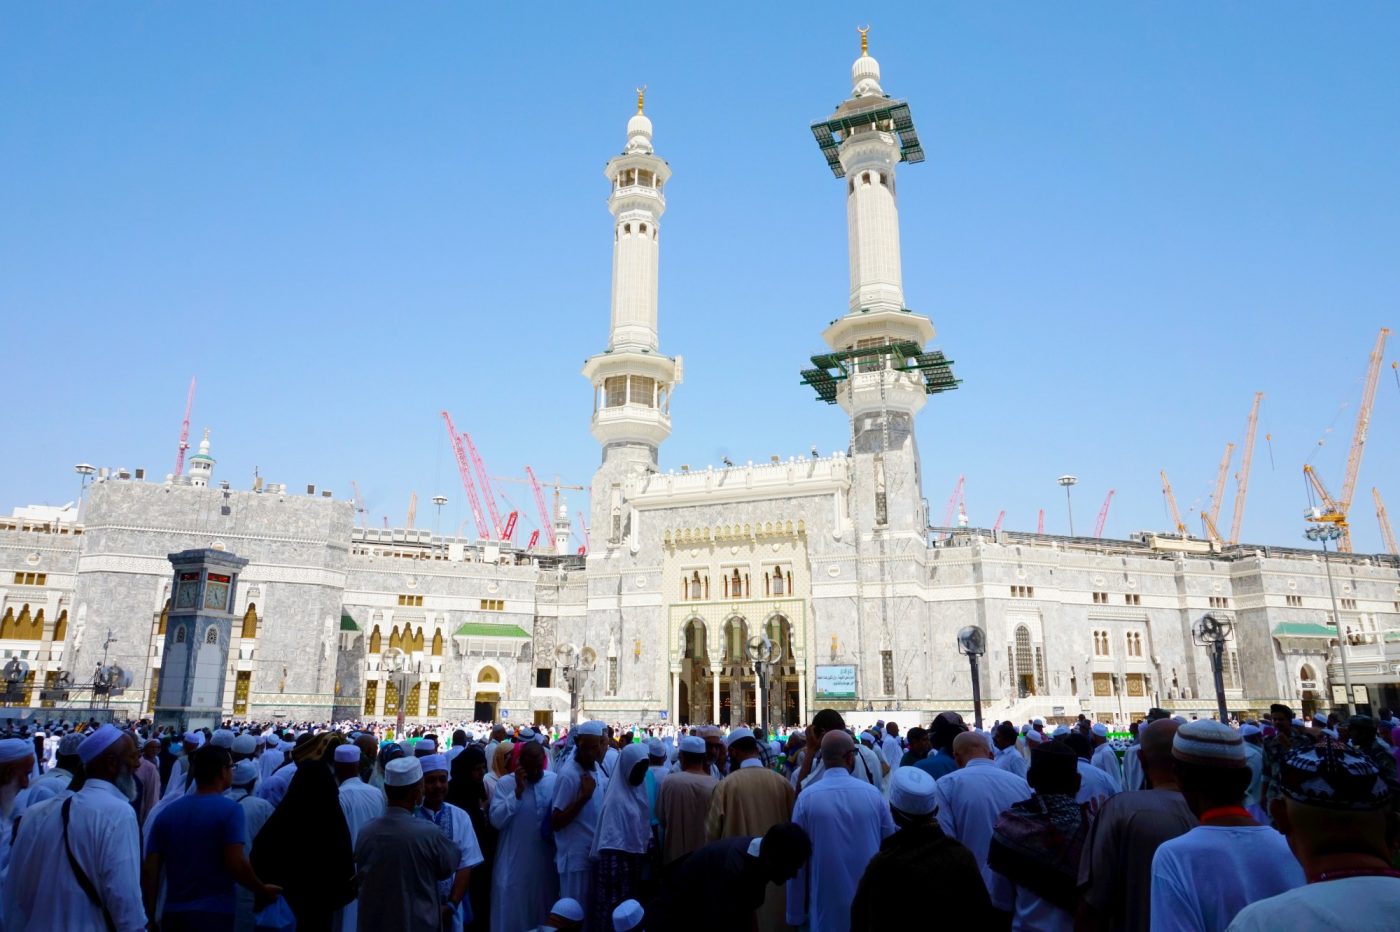 Makkah Guide - Information About Masjid Al Haram | Accorhotels